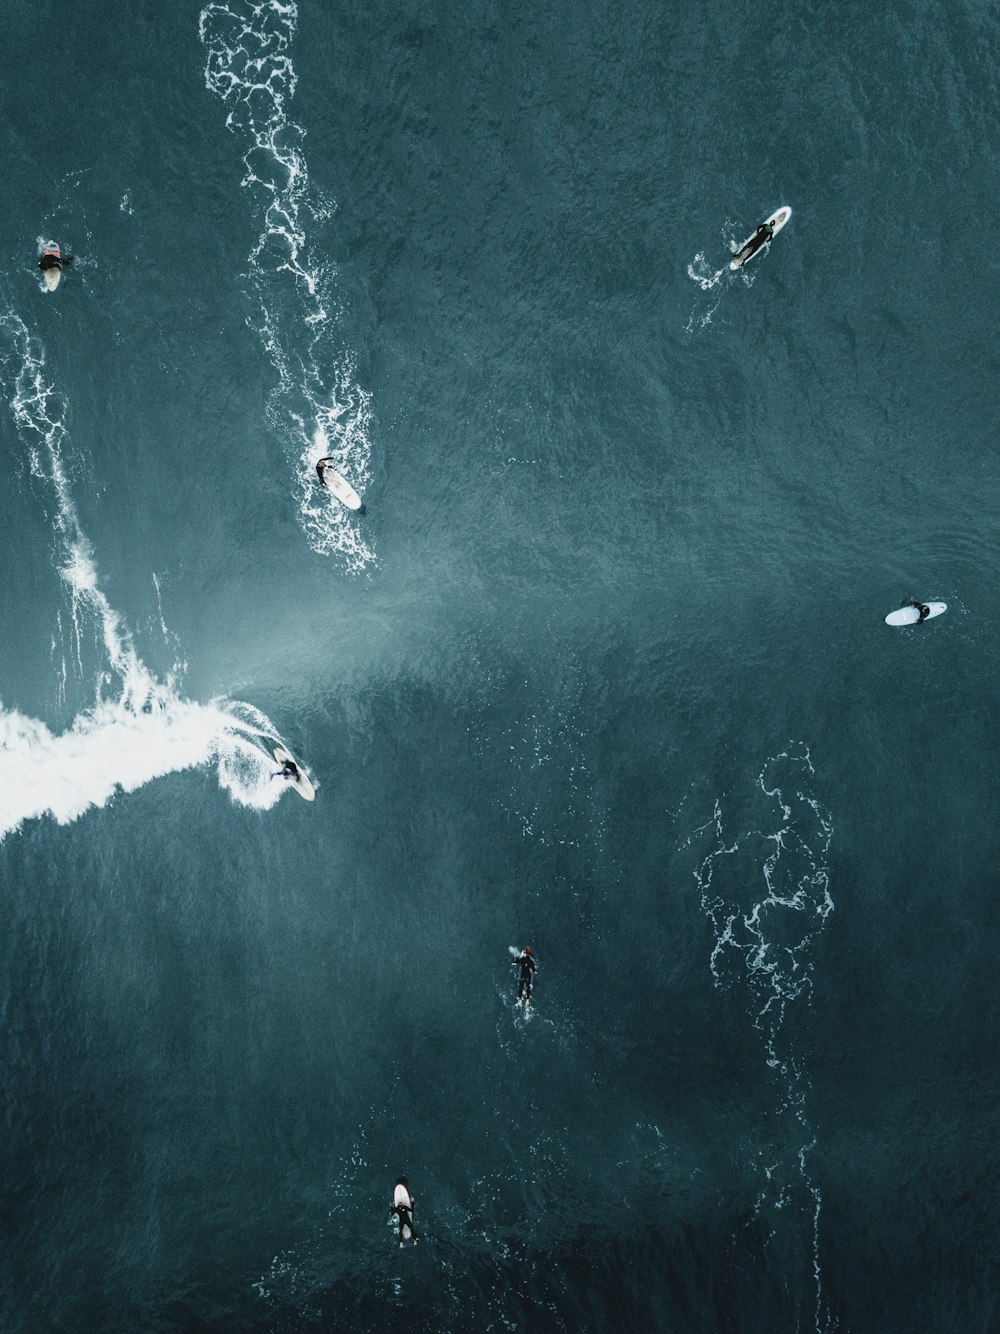 Leute surfen auf dem Meer